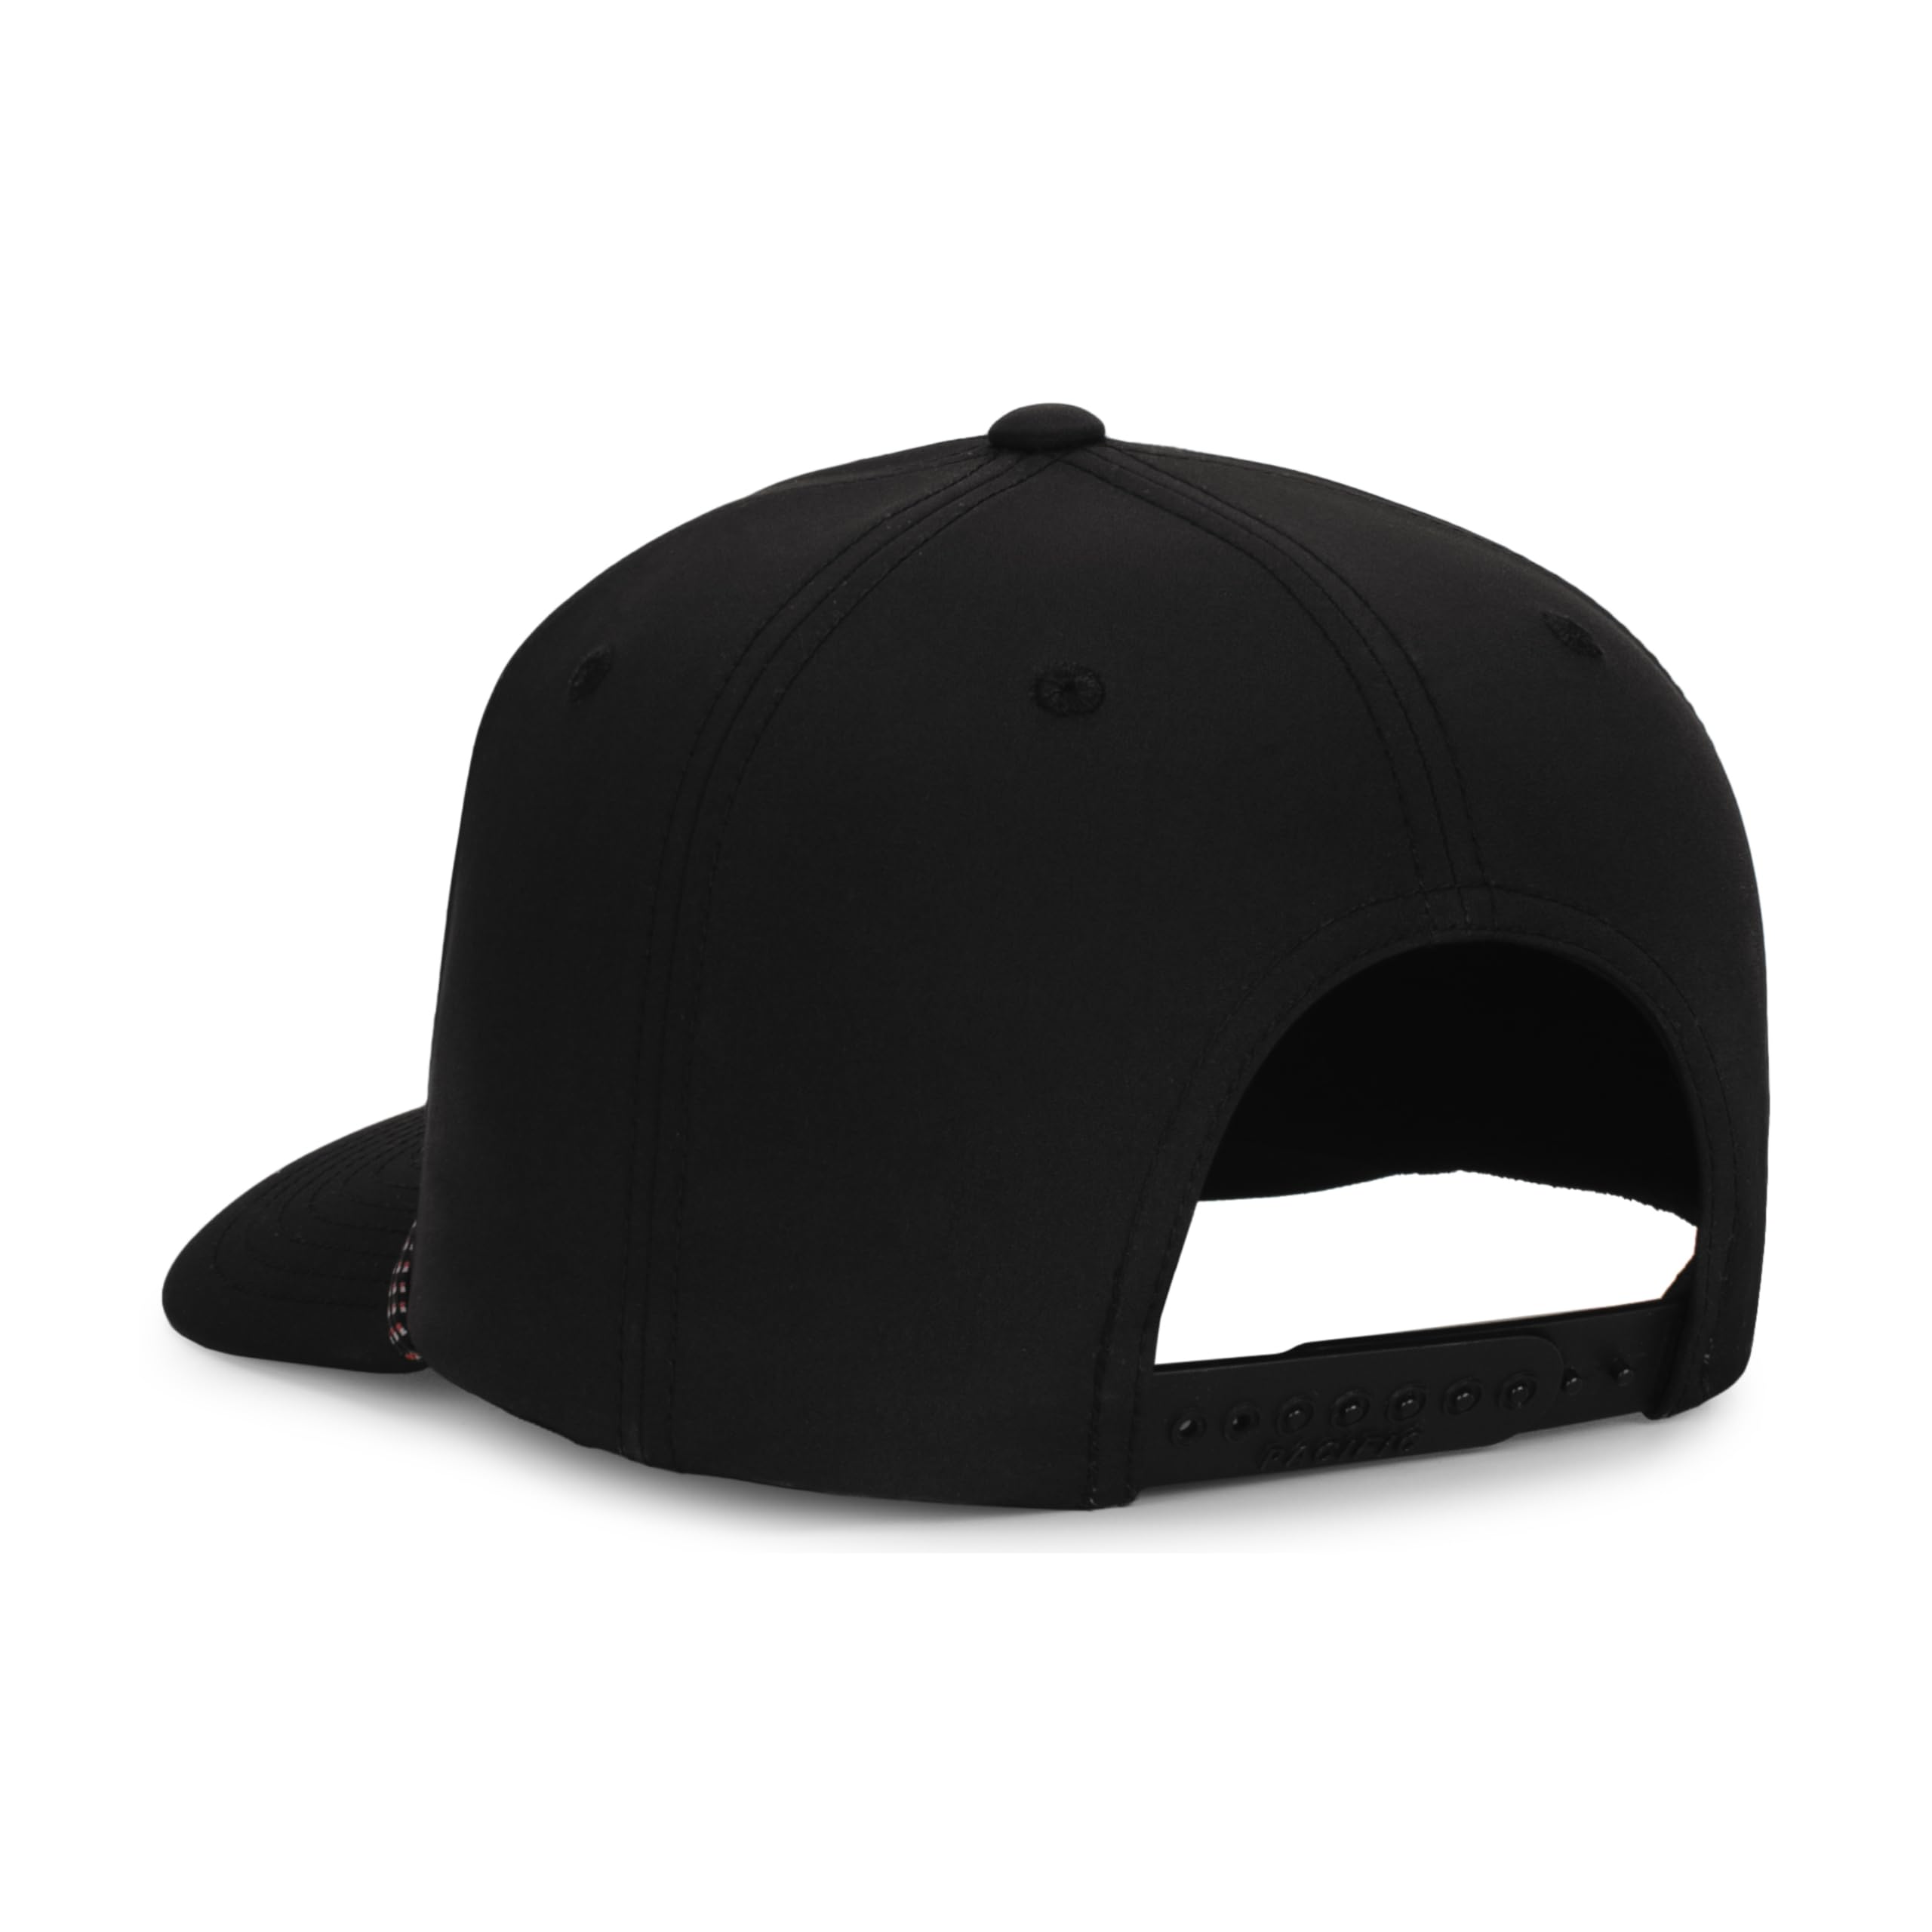 Pacific Headwear Standard Ohio State Weekender Braid Cap, Black/Black/Red